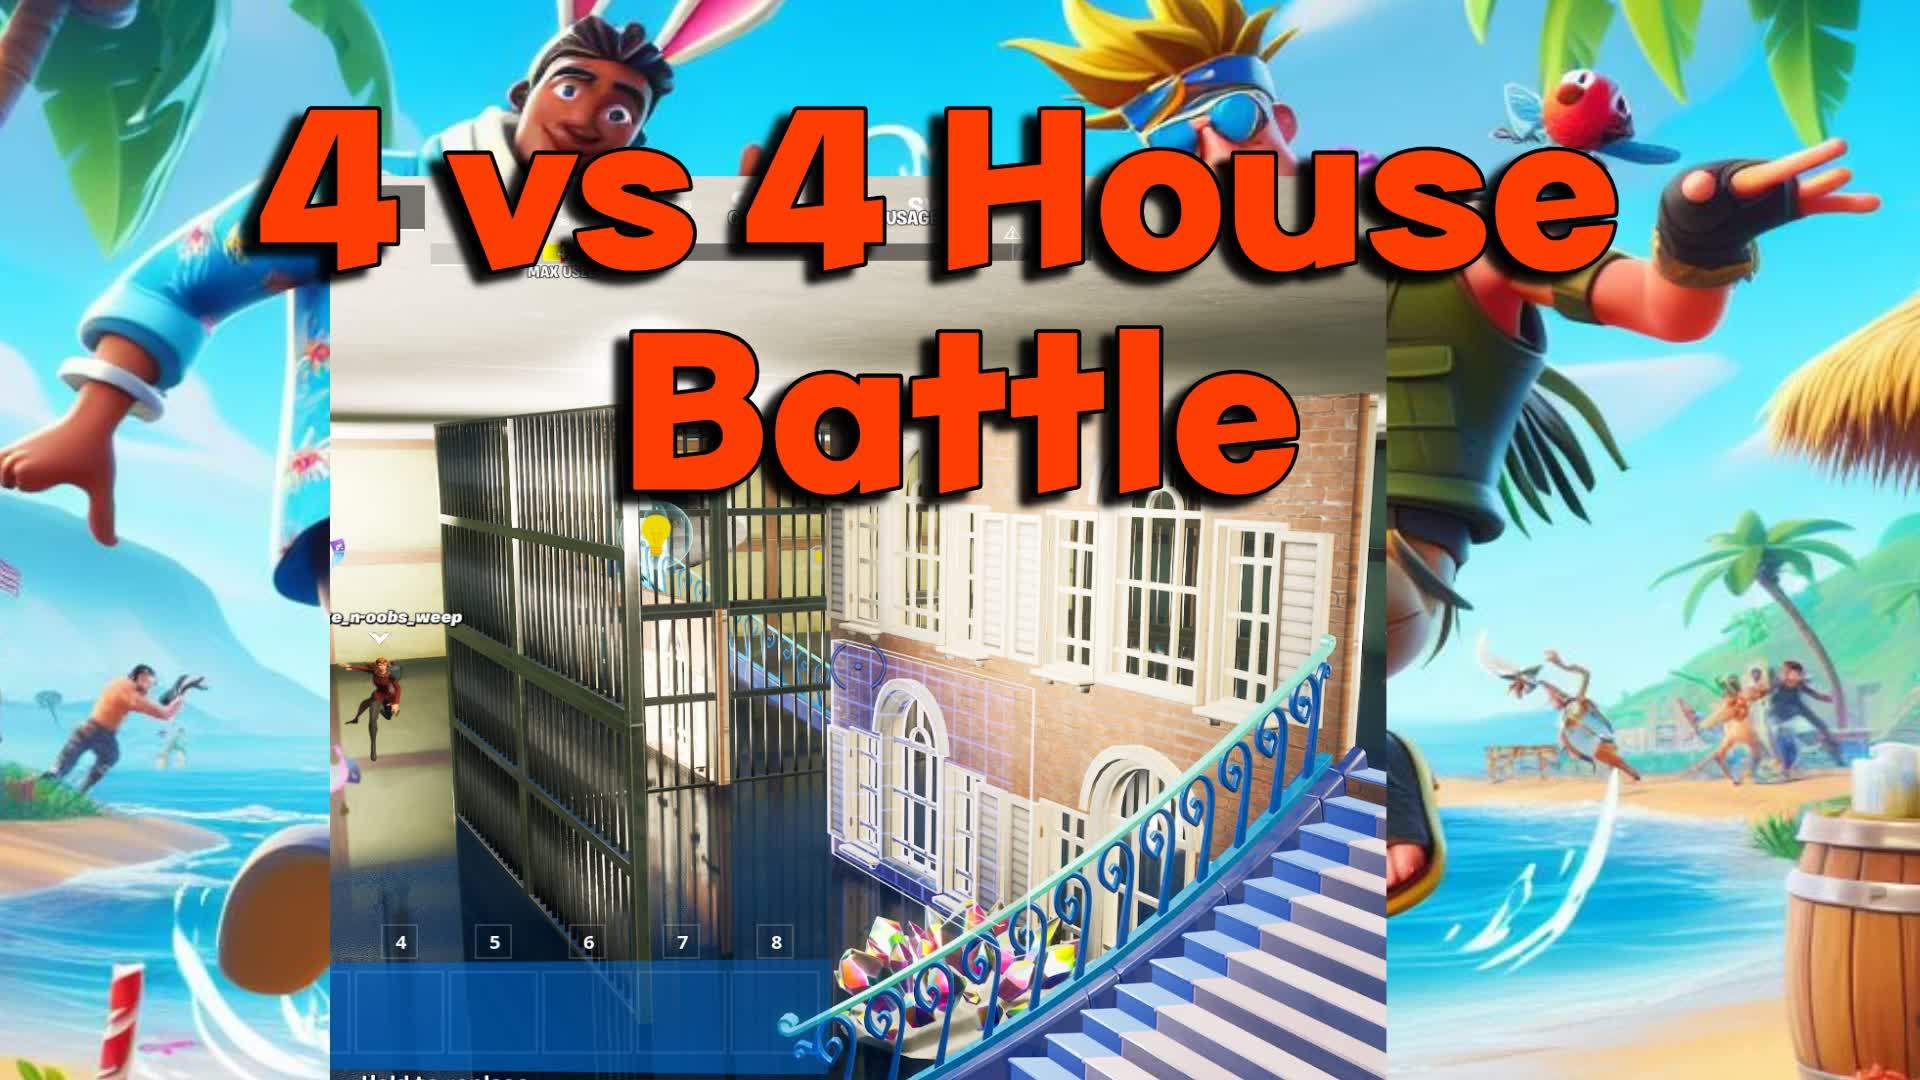 4 v 4 House Battle